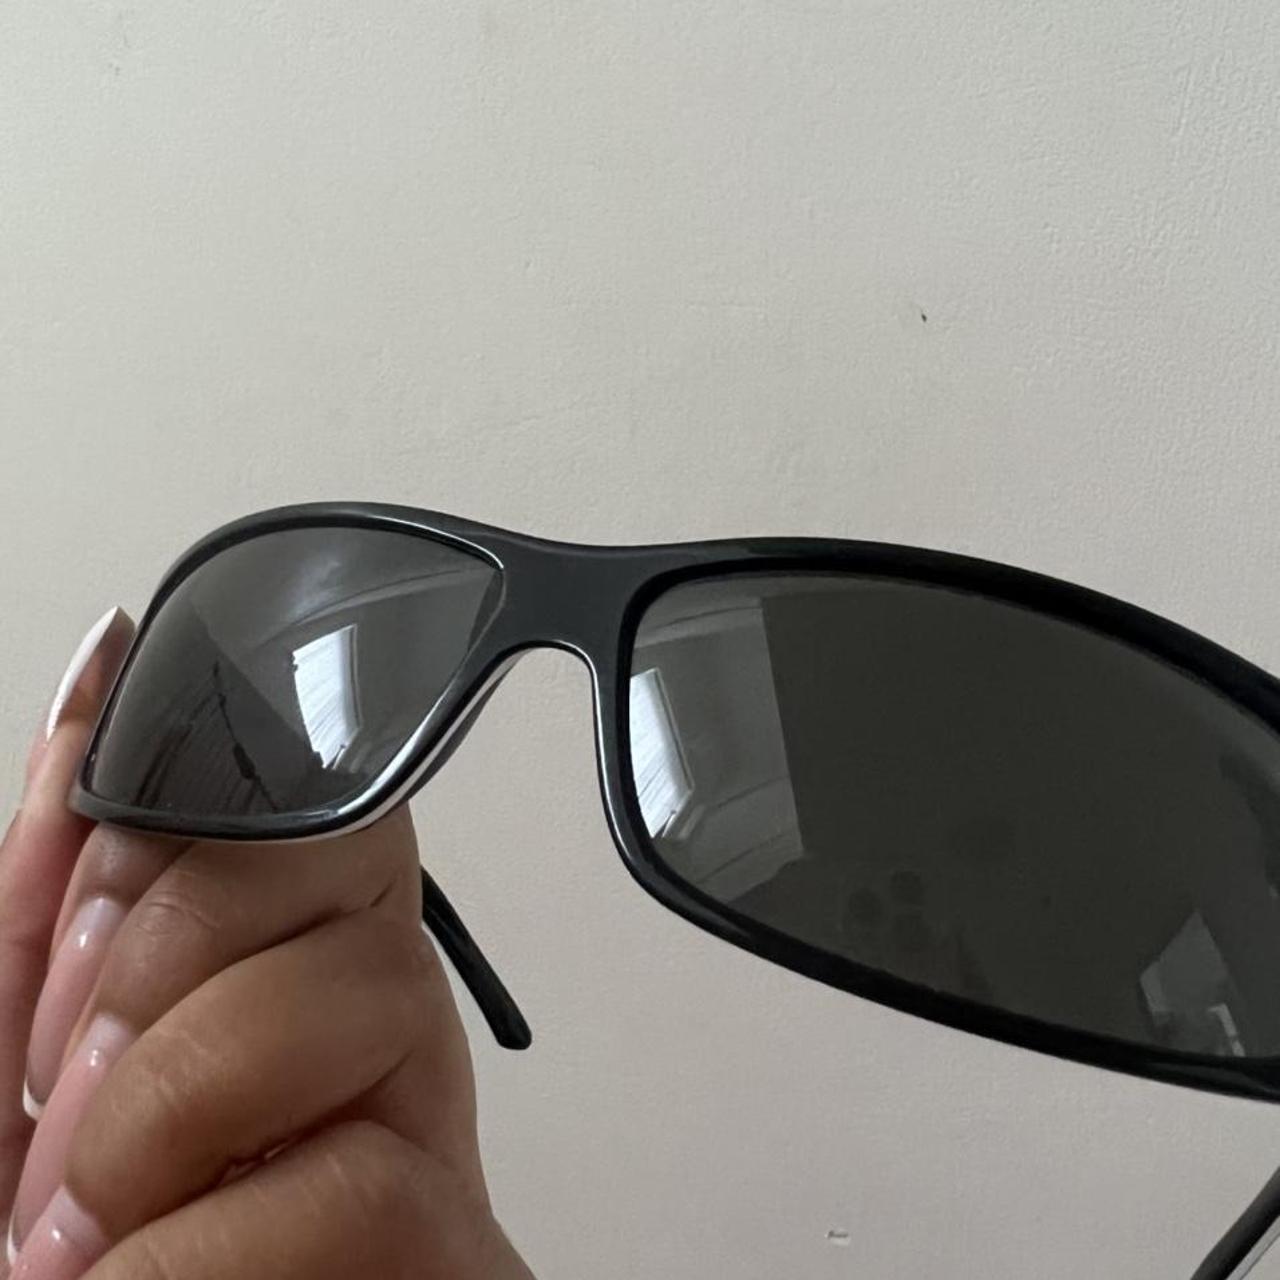 OFFERS 190+ Vintage ‘Your dior 2’ sunglasses Black... - Depop